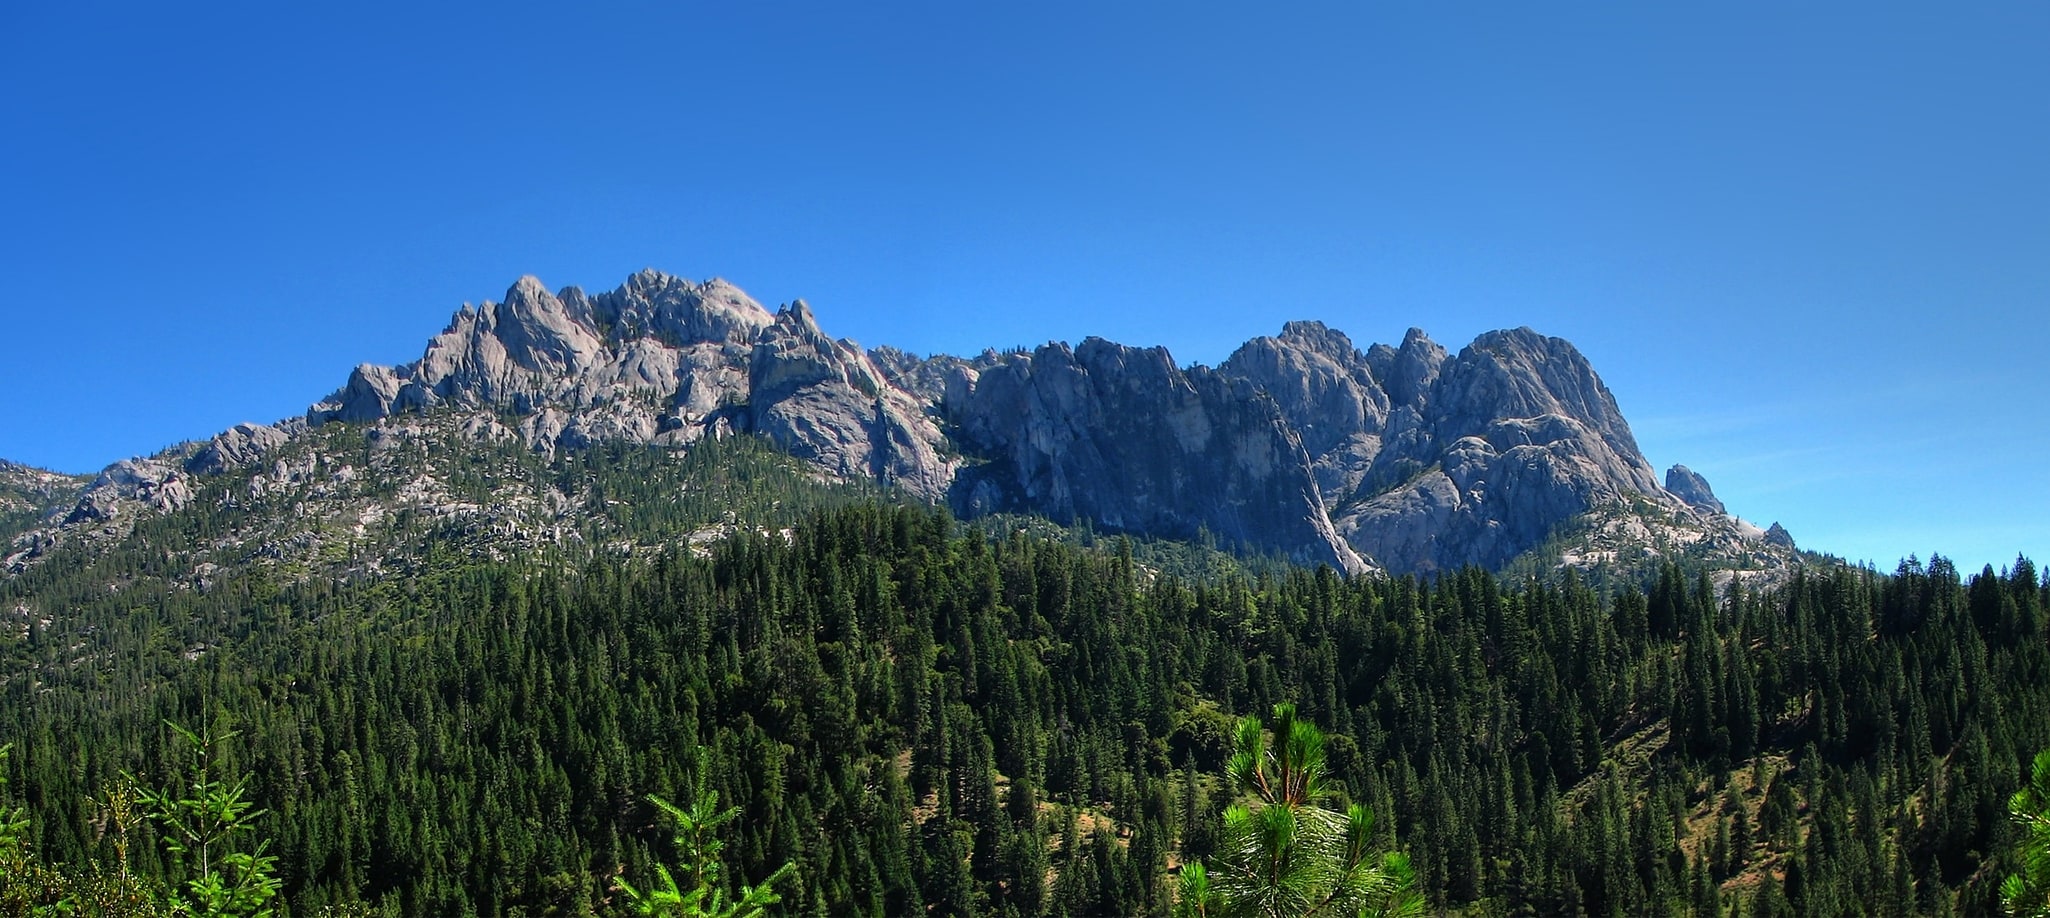 Castle Crags Wilderness, Estados Unidos